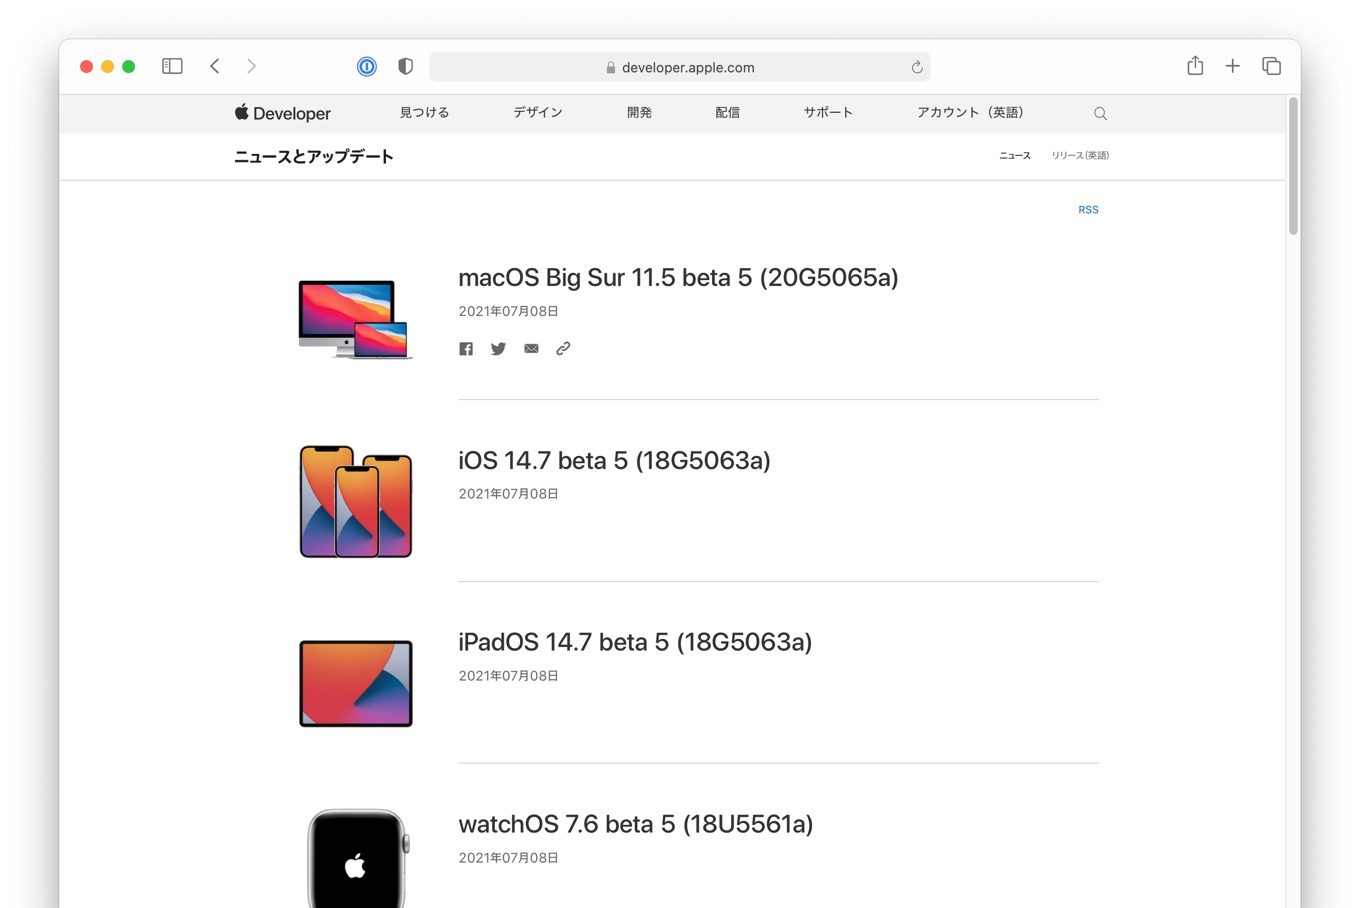  macOS Big Sur 11.5 beta 5 (20G5065a)